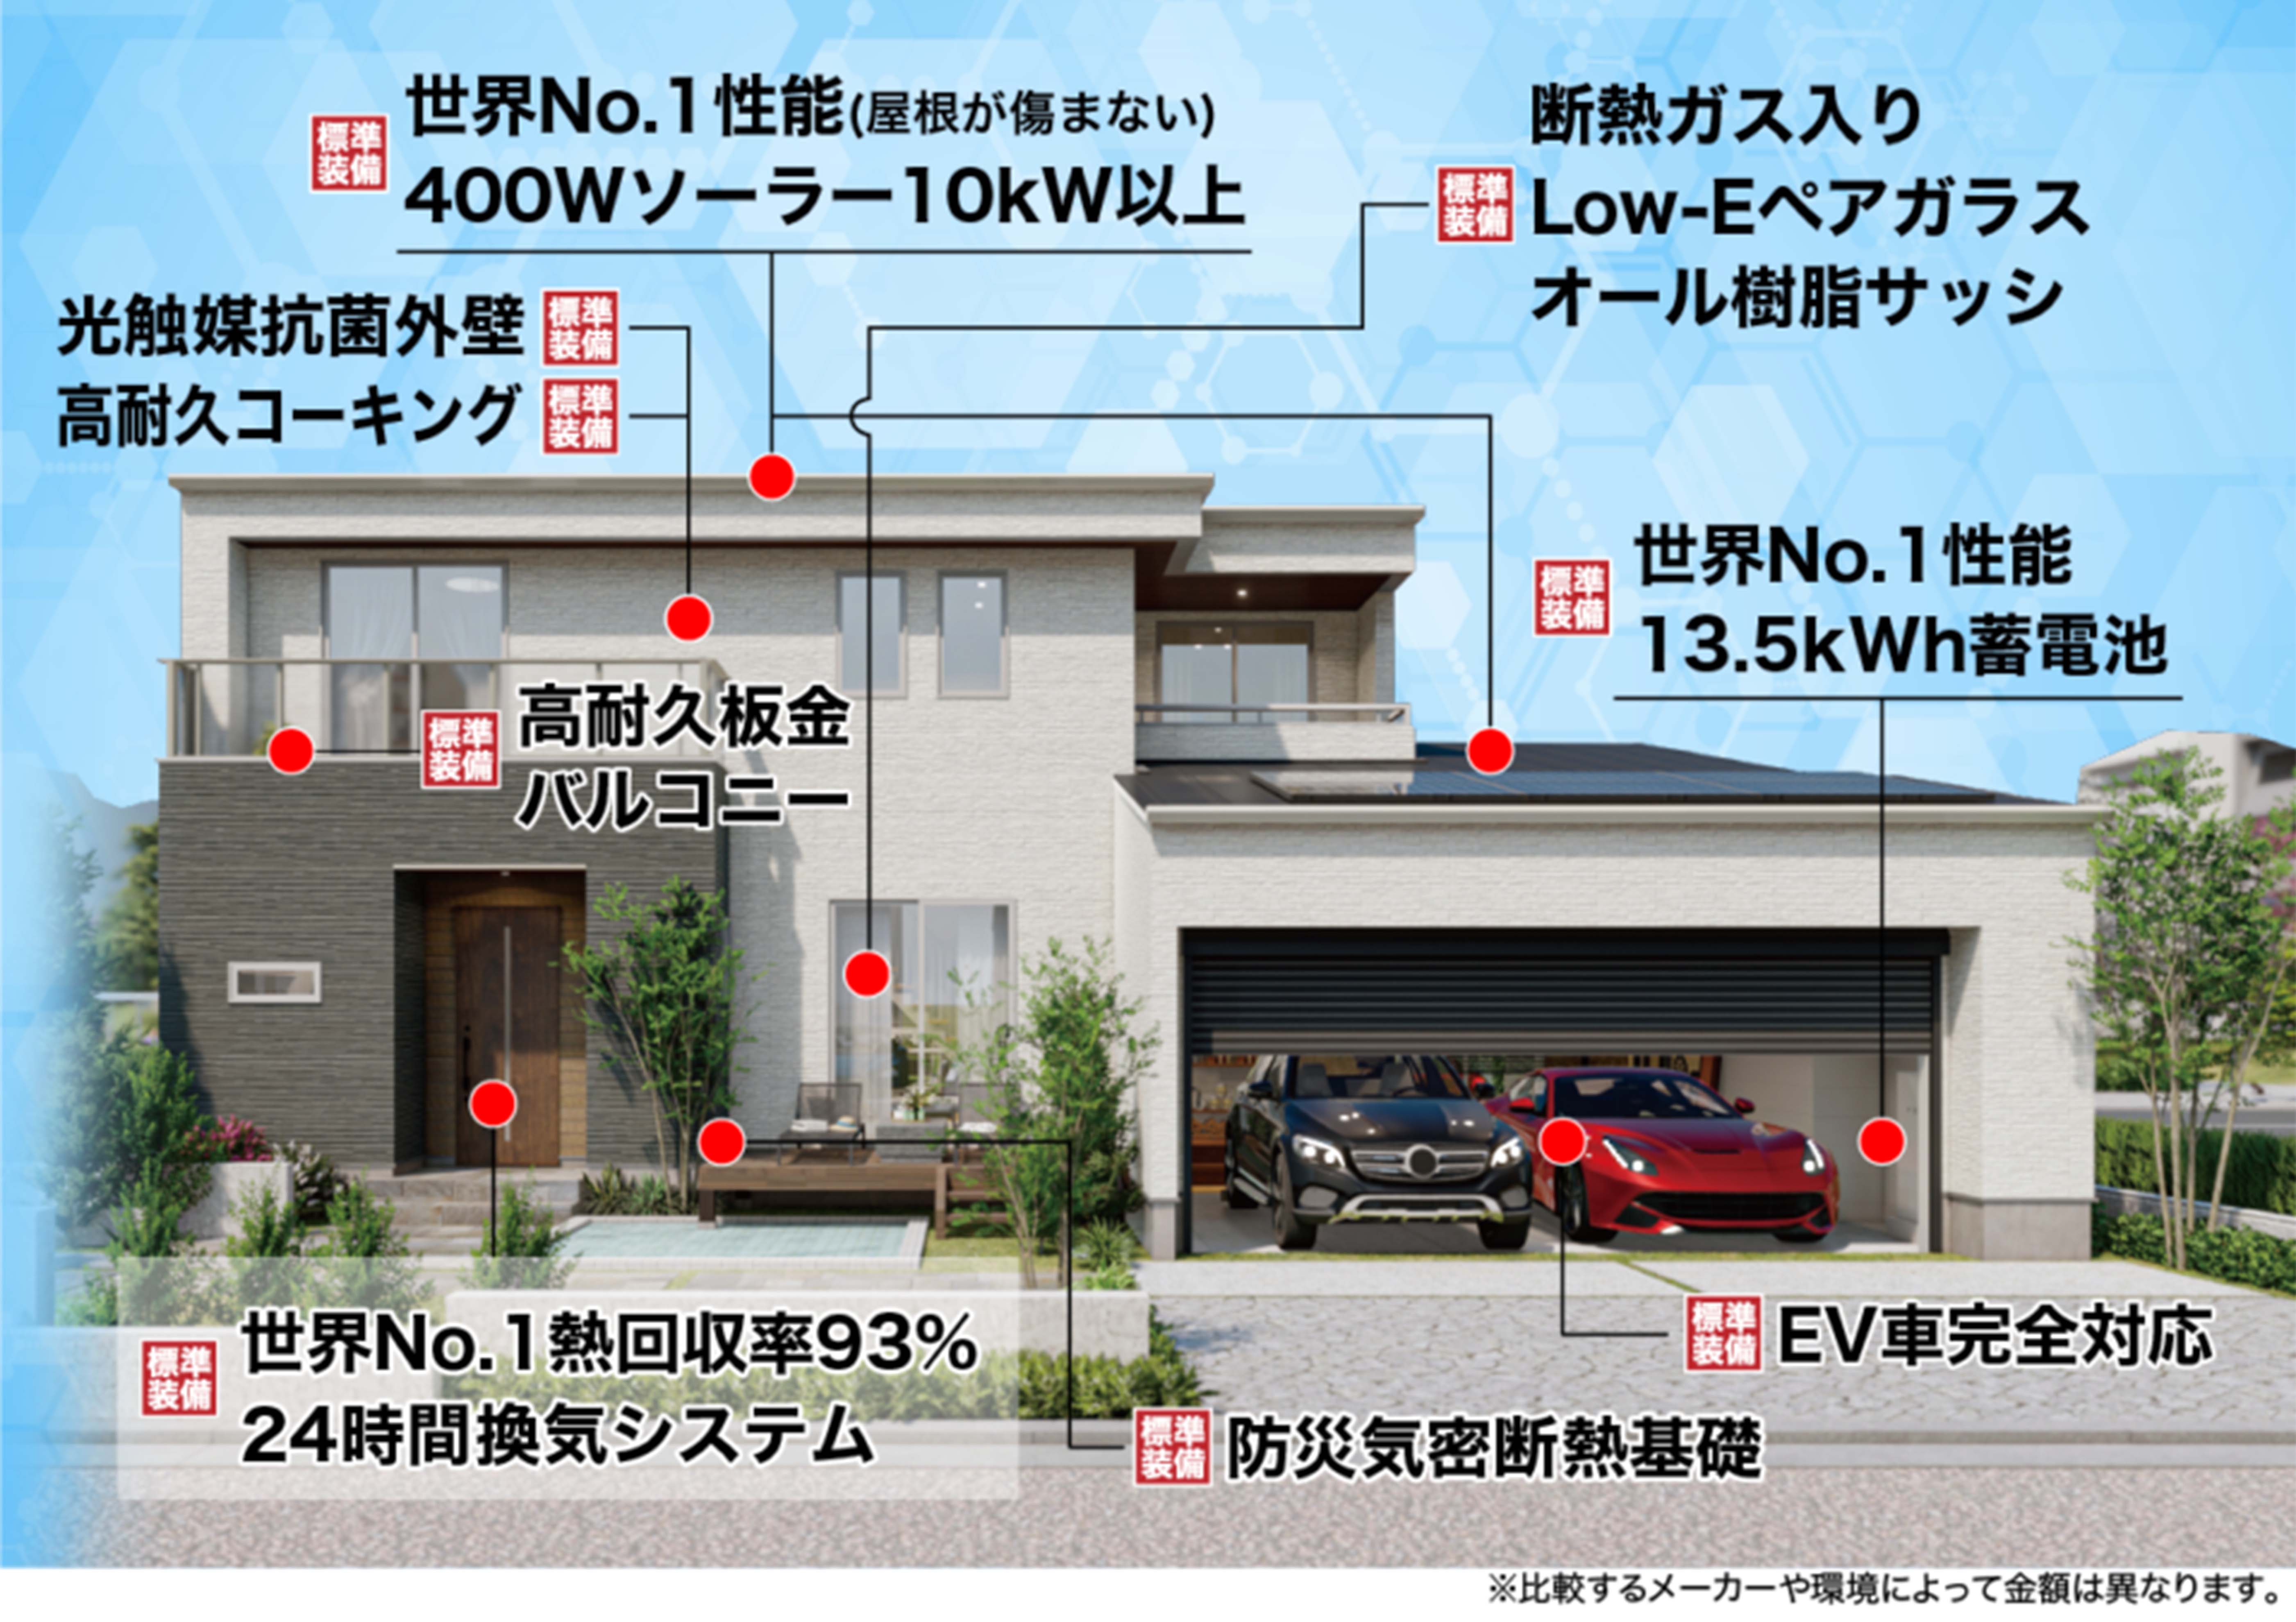 充実フル装備の家は、オプションとメンテ費用が900万円も違う!?